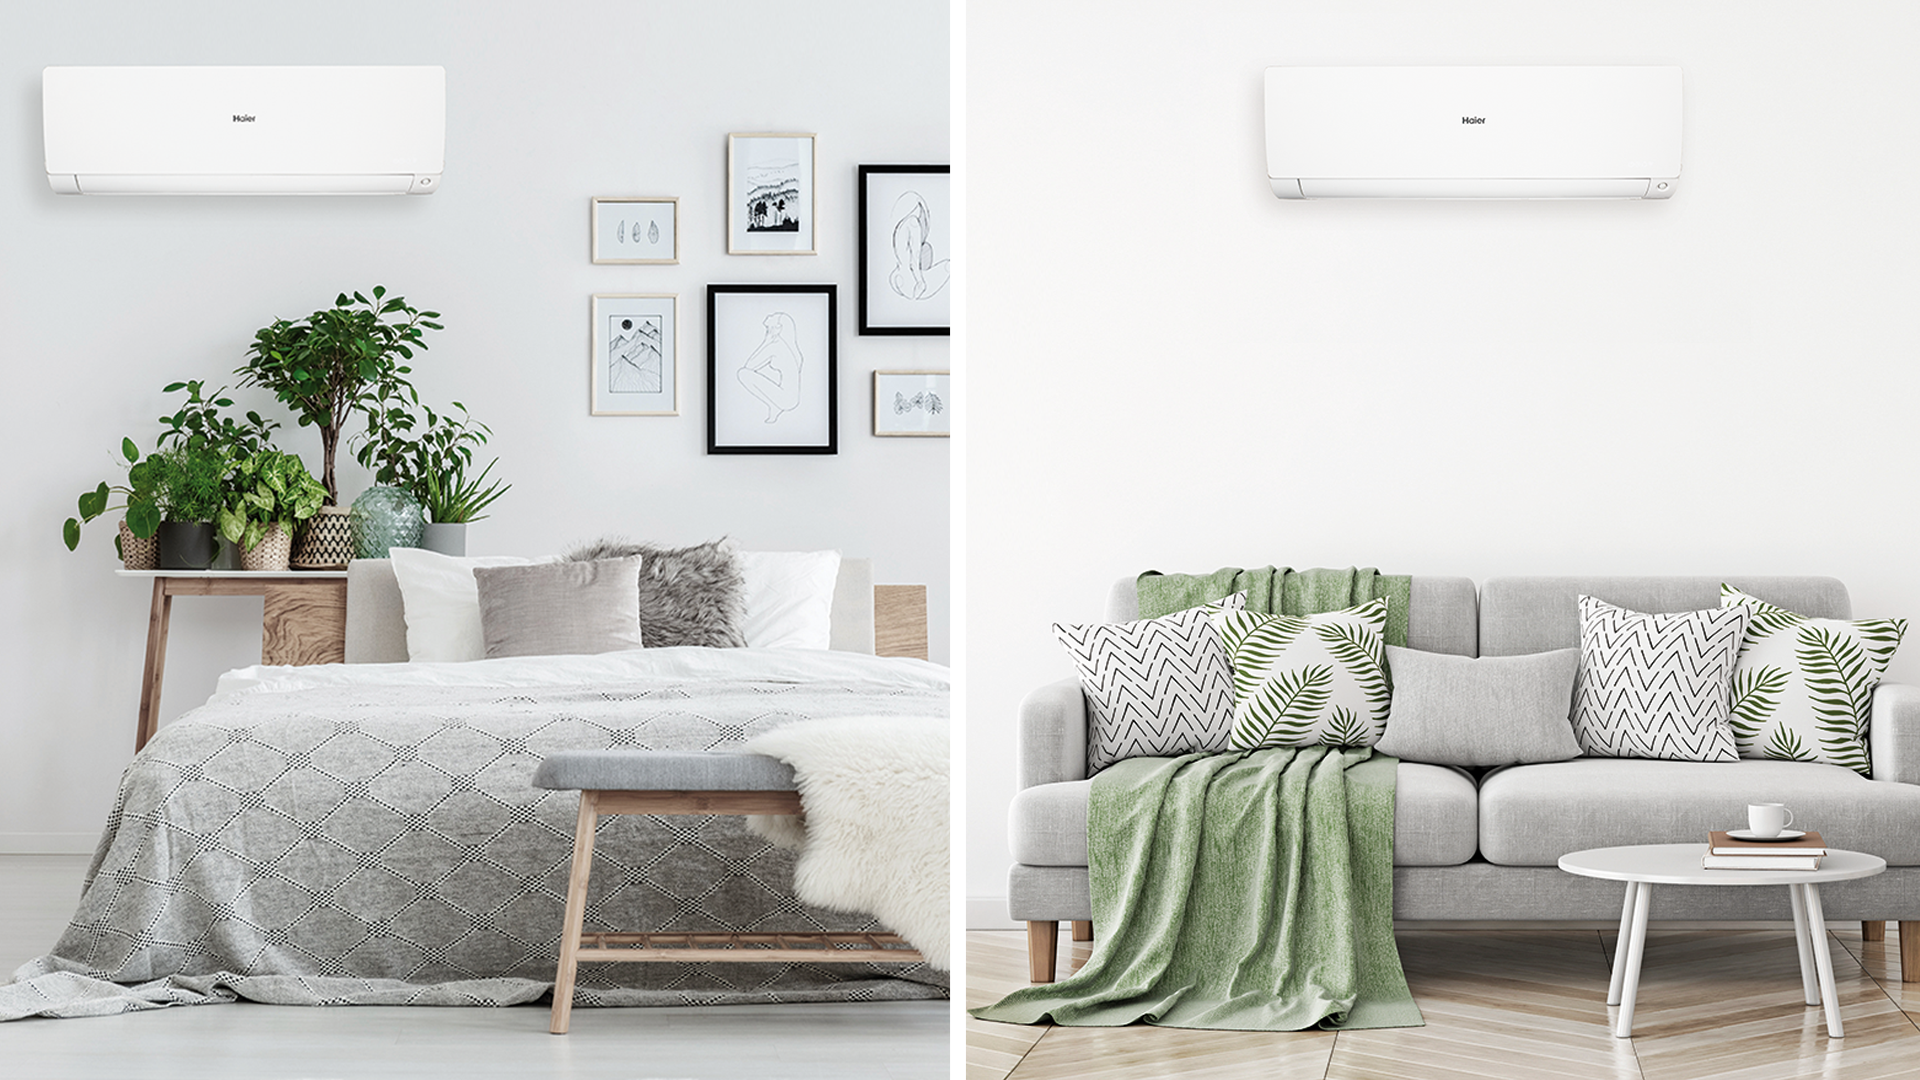 climatizzatore-preventivo-prezzo-climatizzatori-condizionatore-haier-offerte-climatizzatore (1)